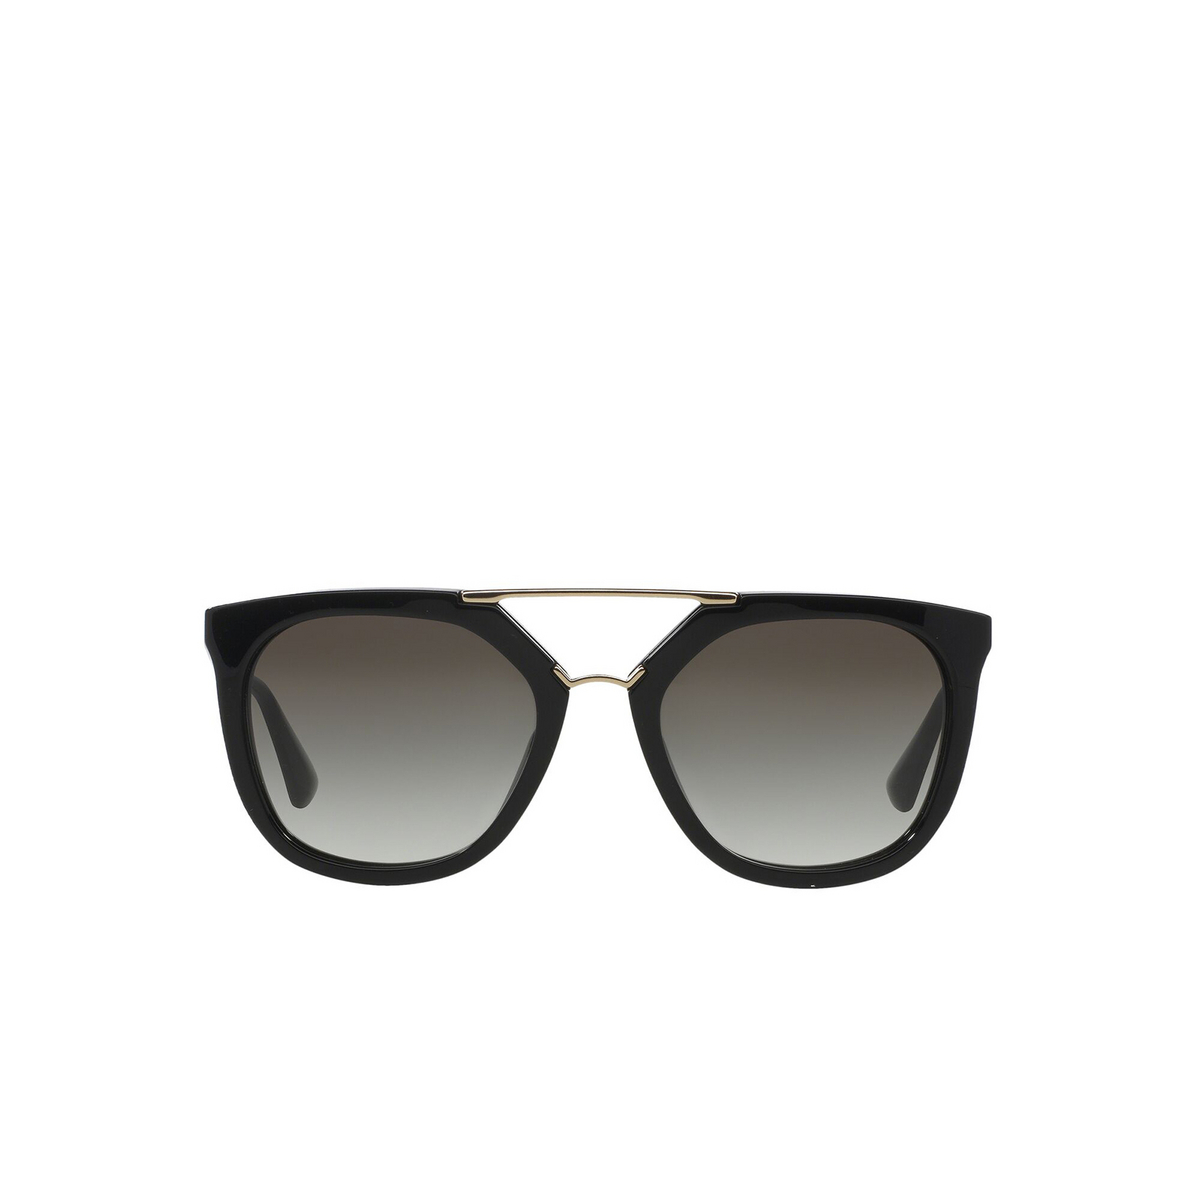 Prada® Irregular Sunglasses: Catwalk PR 13QS color Black 1AB0A7 - front view.